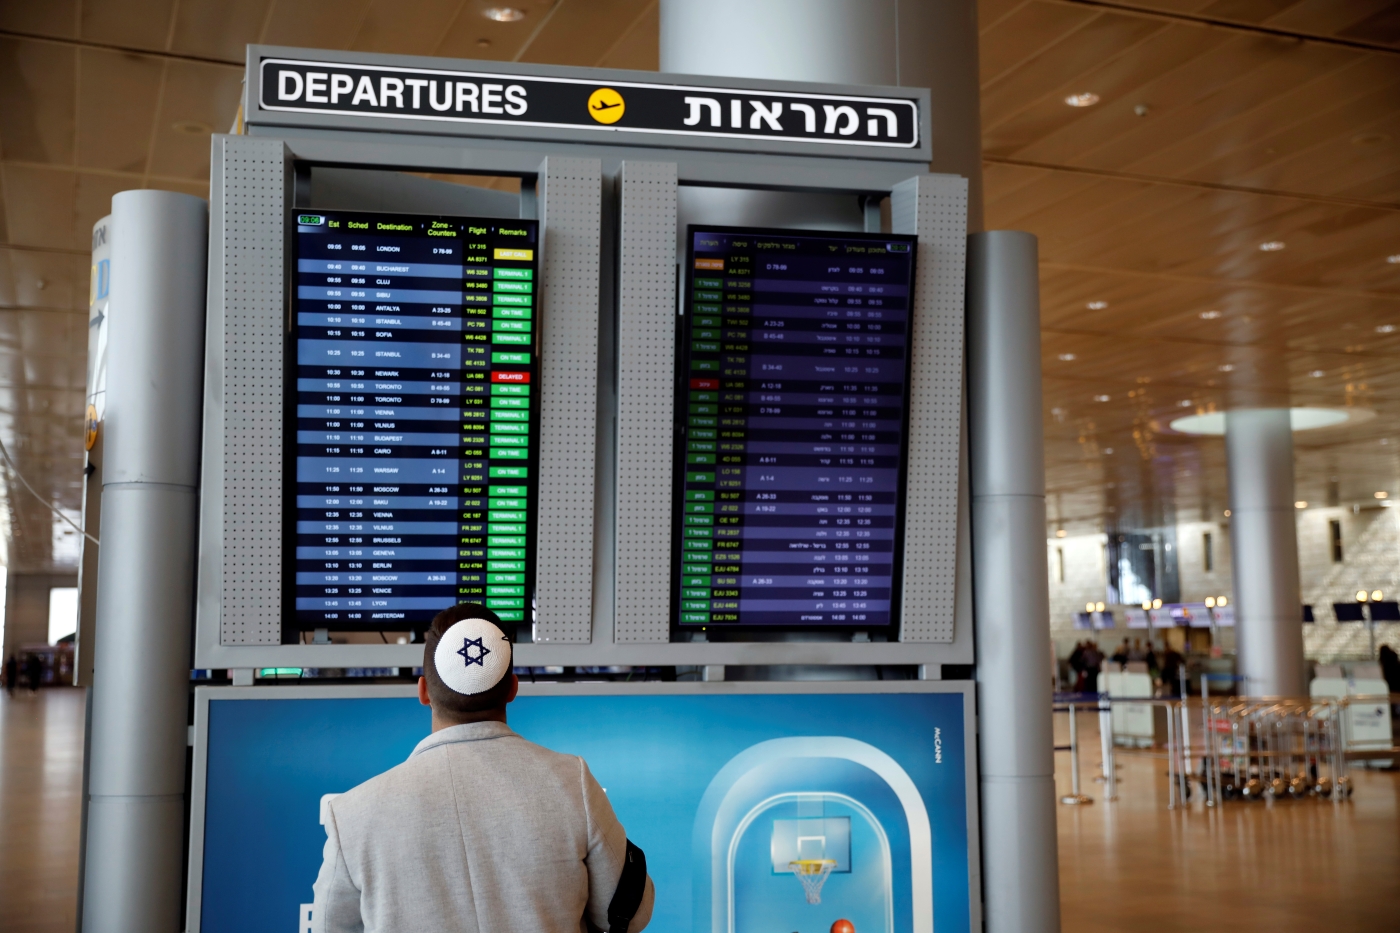 Un homme consulte un panneau d’information sur les vols dans le terminal des départs de l’aéroport international Ben Gourion de Lod, près de Tel-Aviv (Israël), le 10 mars 2020 (Reuters)